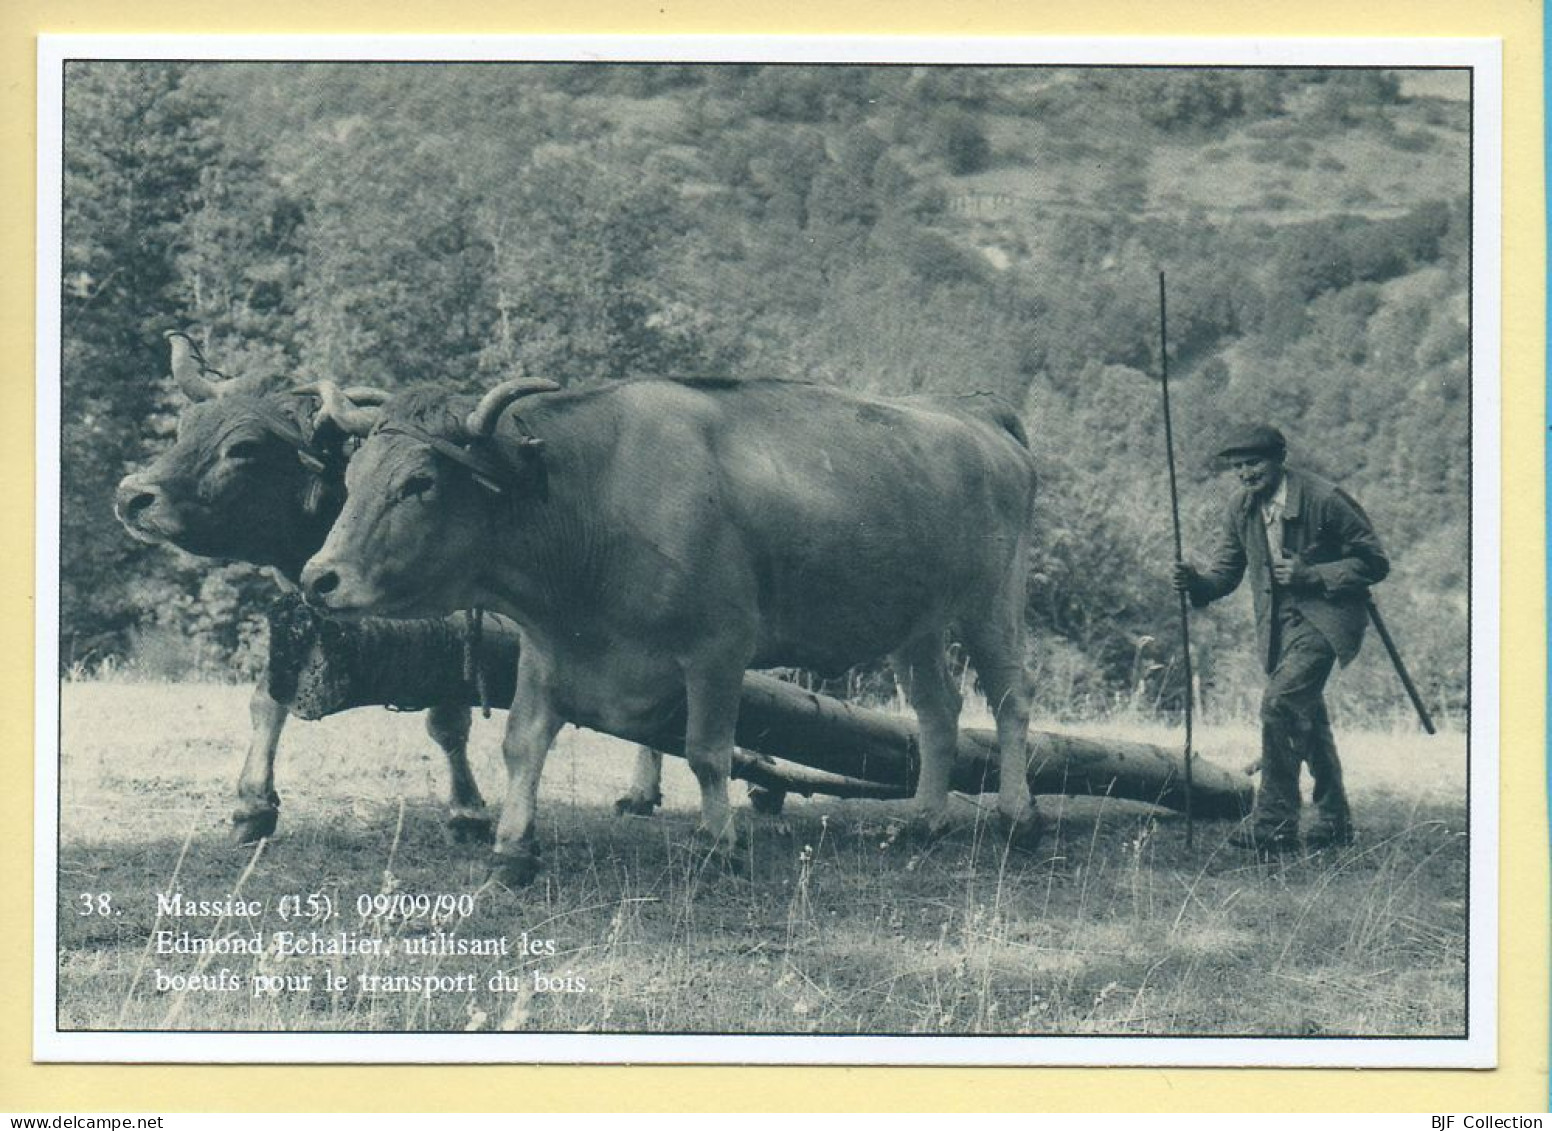 Edmond ECHALIER Utilisant Les Bœufs Pour Le Transport Du Bois (15) Massiac (Philippe CHMIELEWSKI) N° 38 – 750 Ex - Bauern